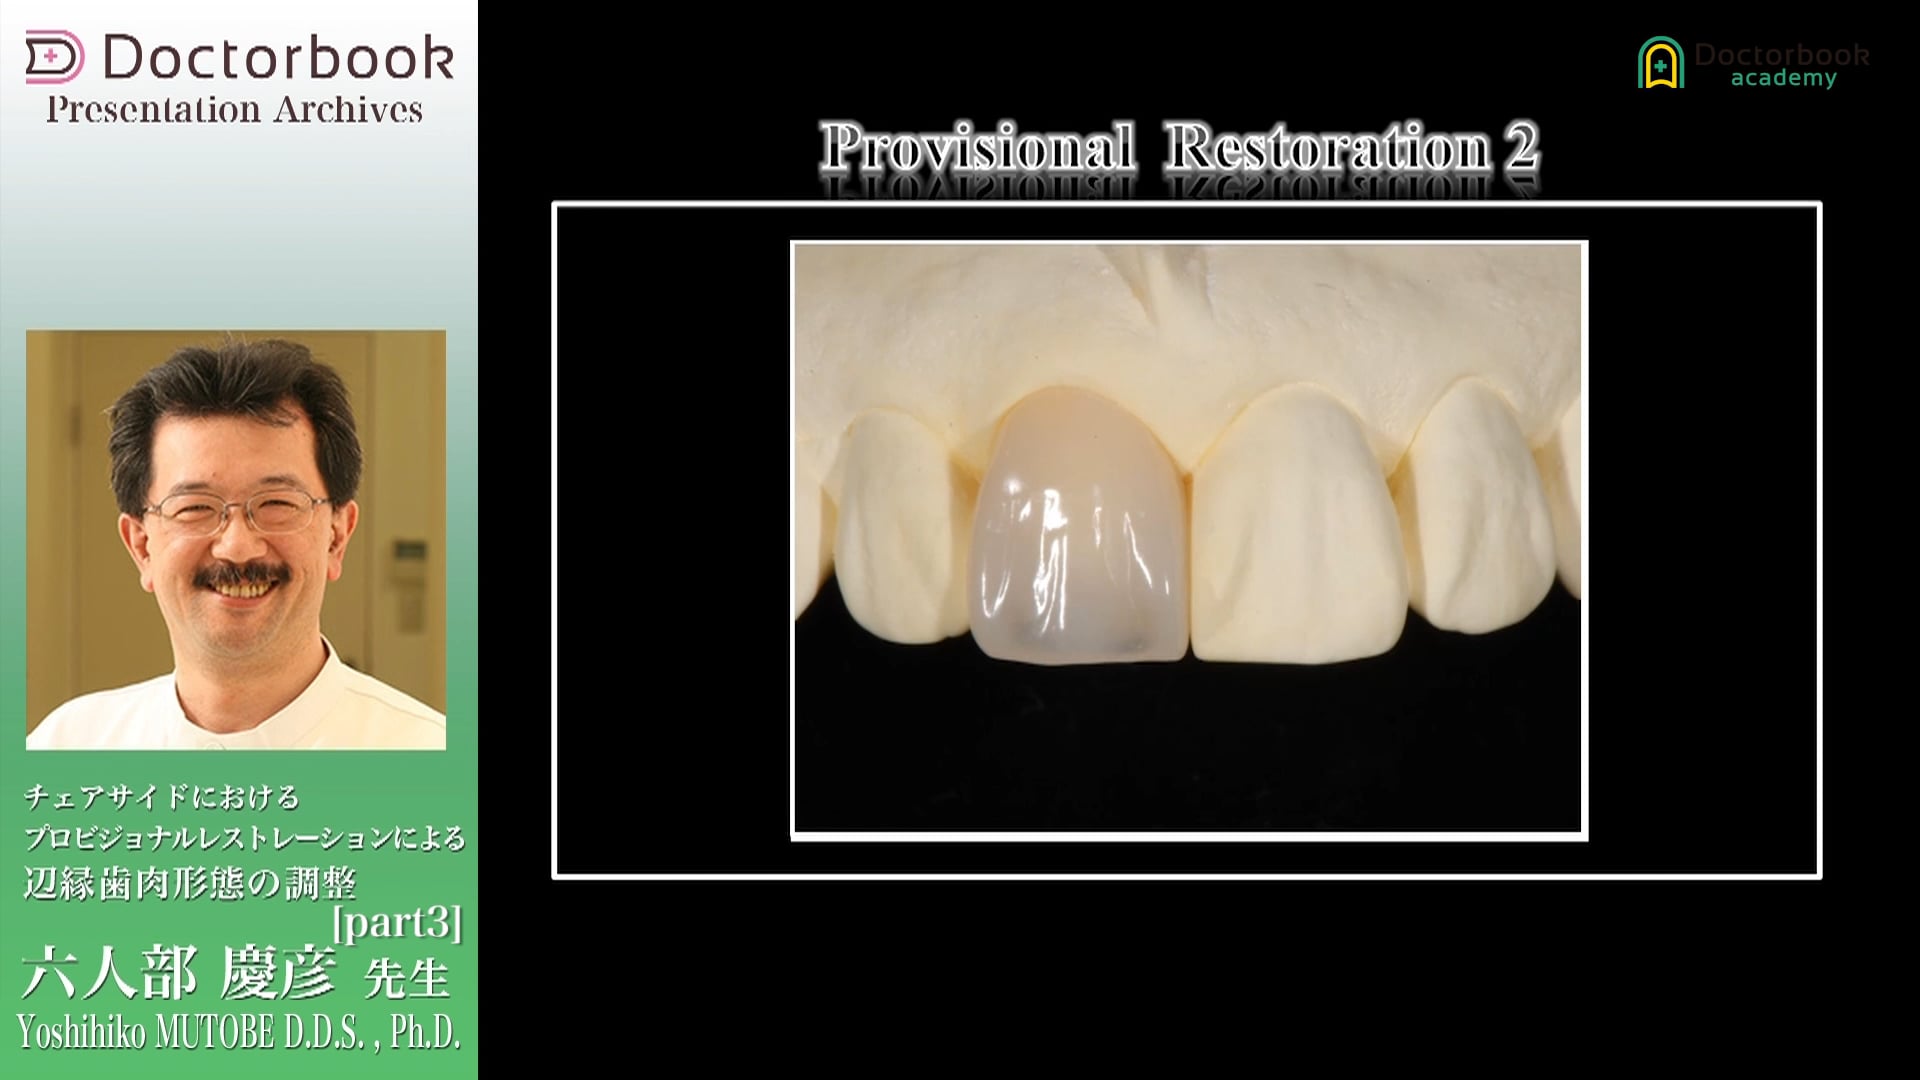 チェアサイドにおけるプロビジョナルレストレーションによる辺縁歯肉形態の調整 #3